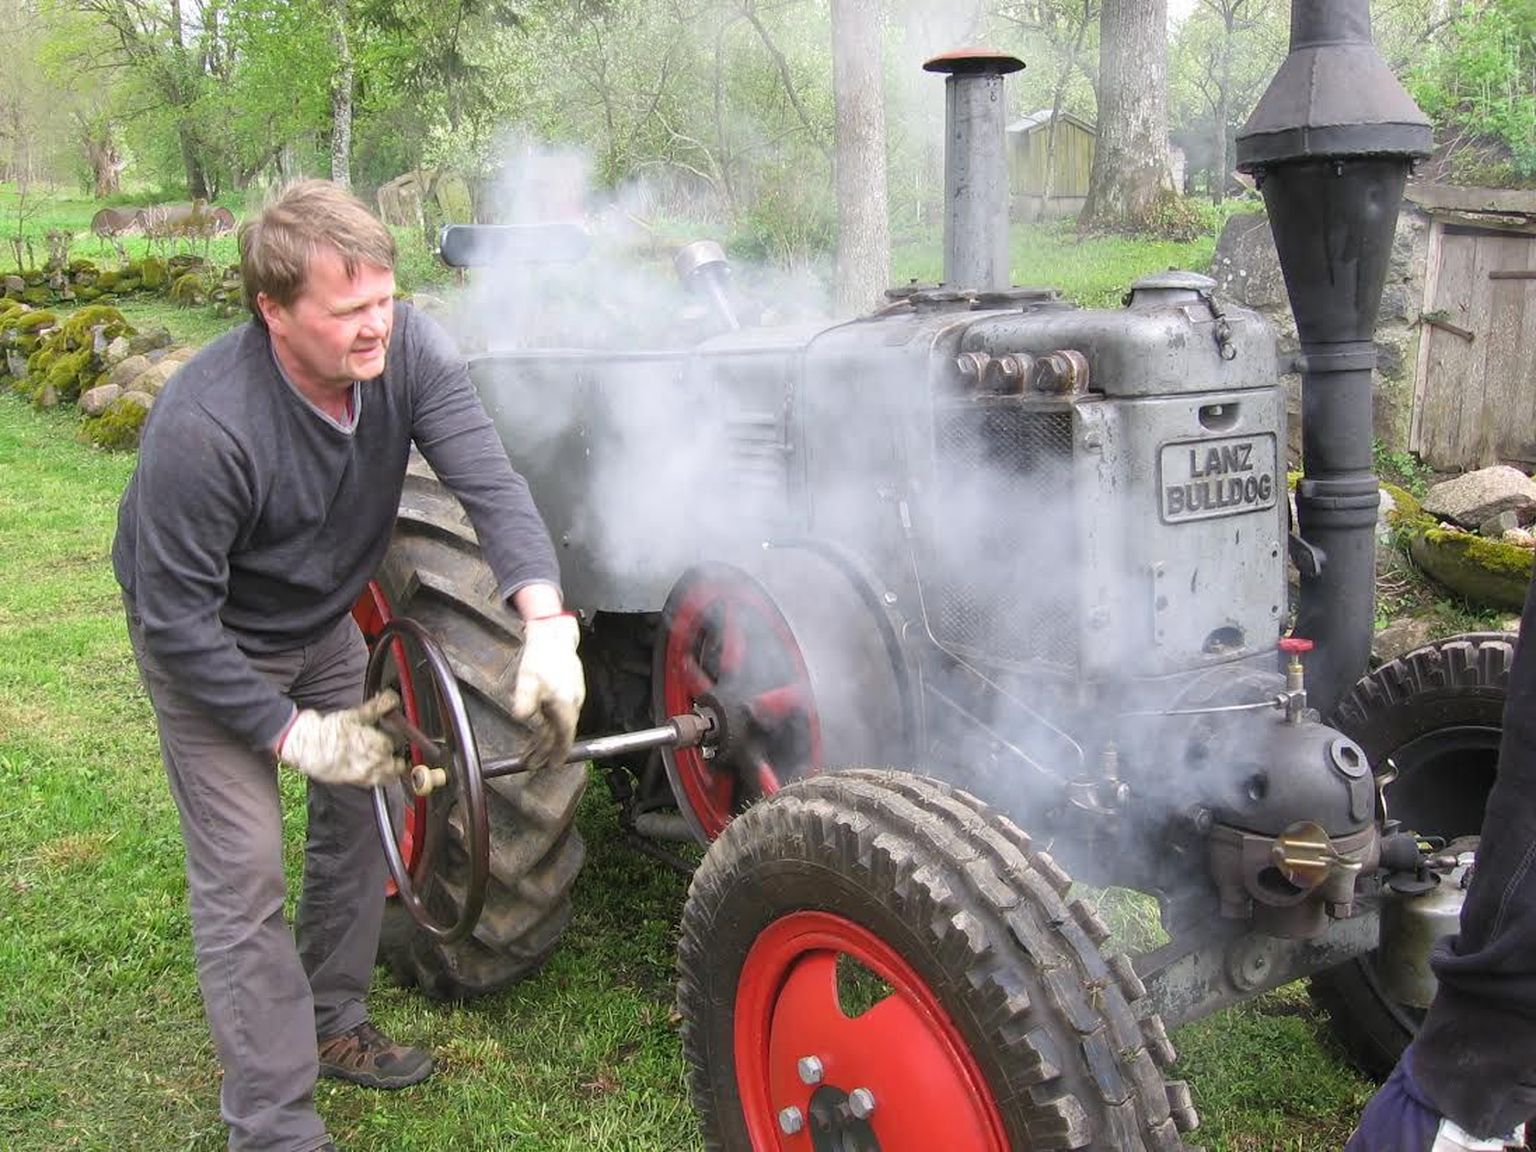 Lääne-Virumaa mehe Jüri Vilimaa ja tema töökaaslaste taastatud 1940. aastast pärinev traktor on imeriist, mis sõidab igasuguse kütusega, ka toiduõliga. Peaasi et põlev vedelik läbi pihusti mahub.